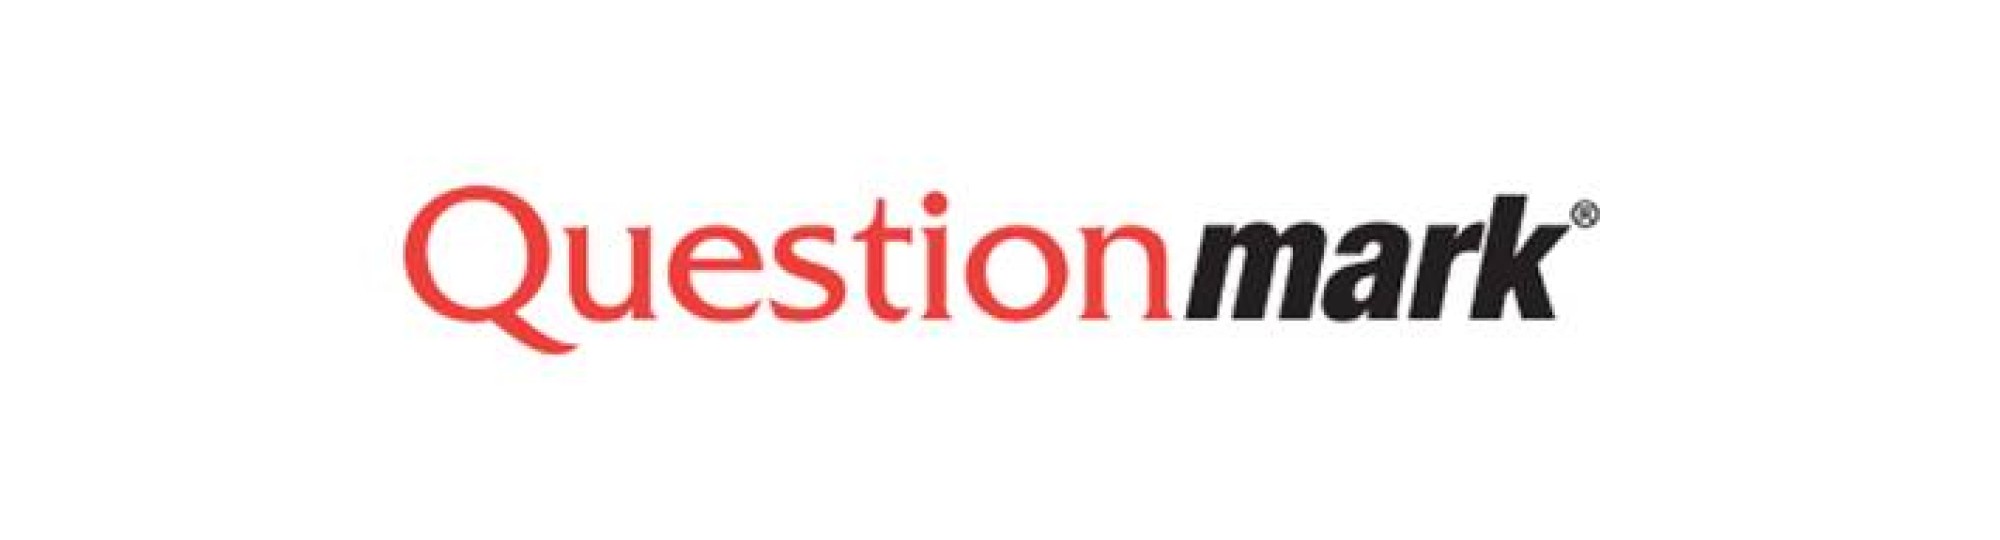 Logo Questionmark_2020